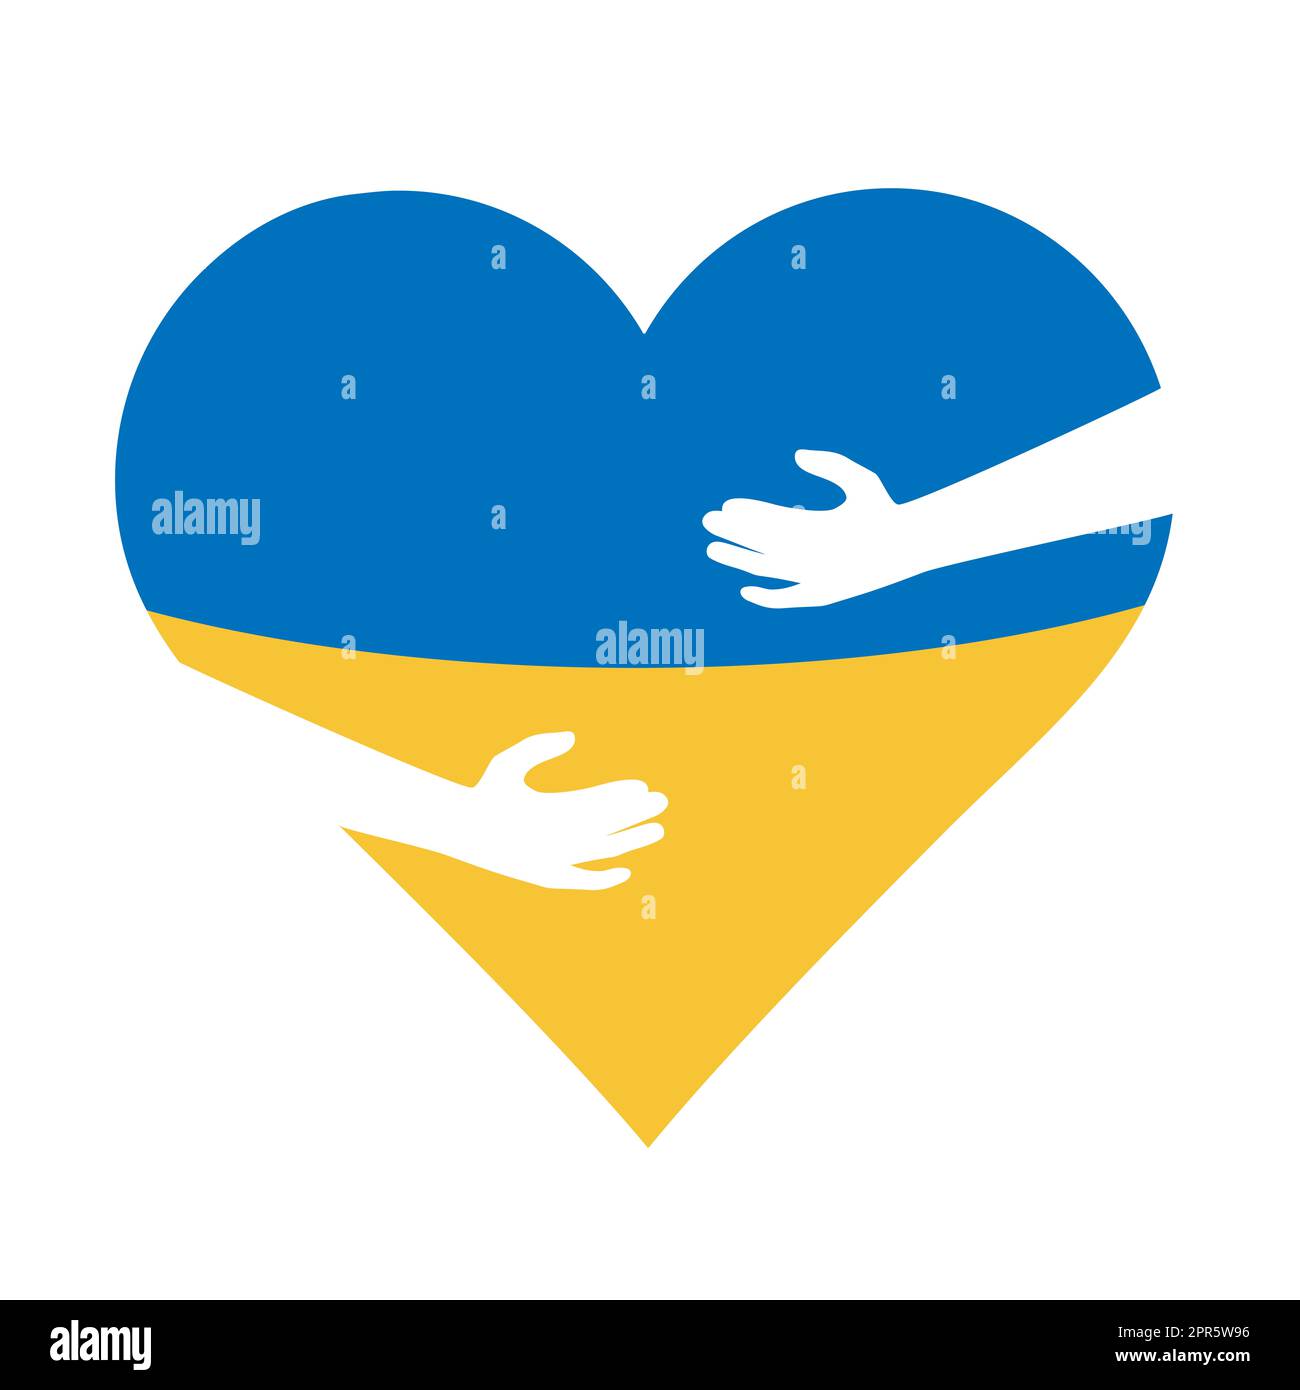 Le mani abbracciano la forma del cuore blu giallo. Colori del disegno dell'icona della bandiera Ucraina. Nessuna guerra, prega per l'Ucraina. Illustrazione vettoriale Foto Stock